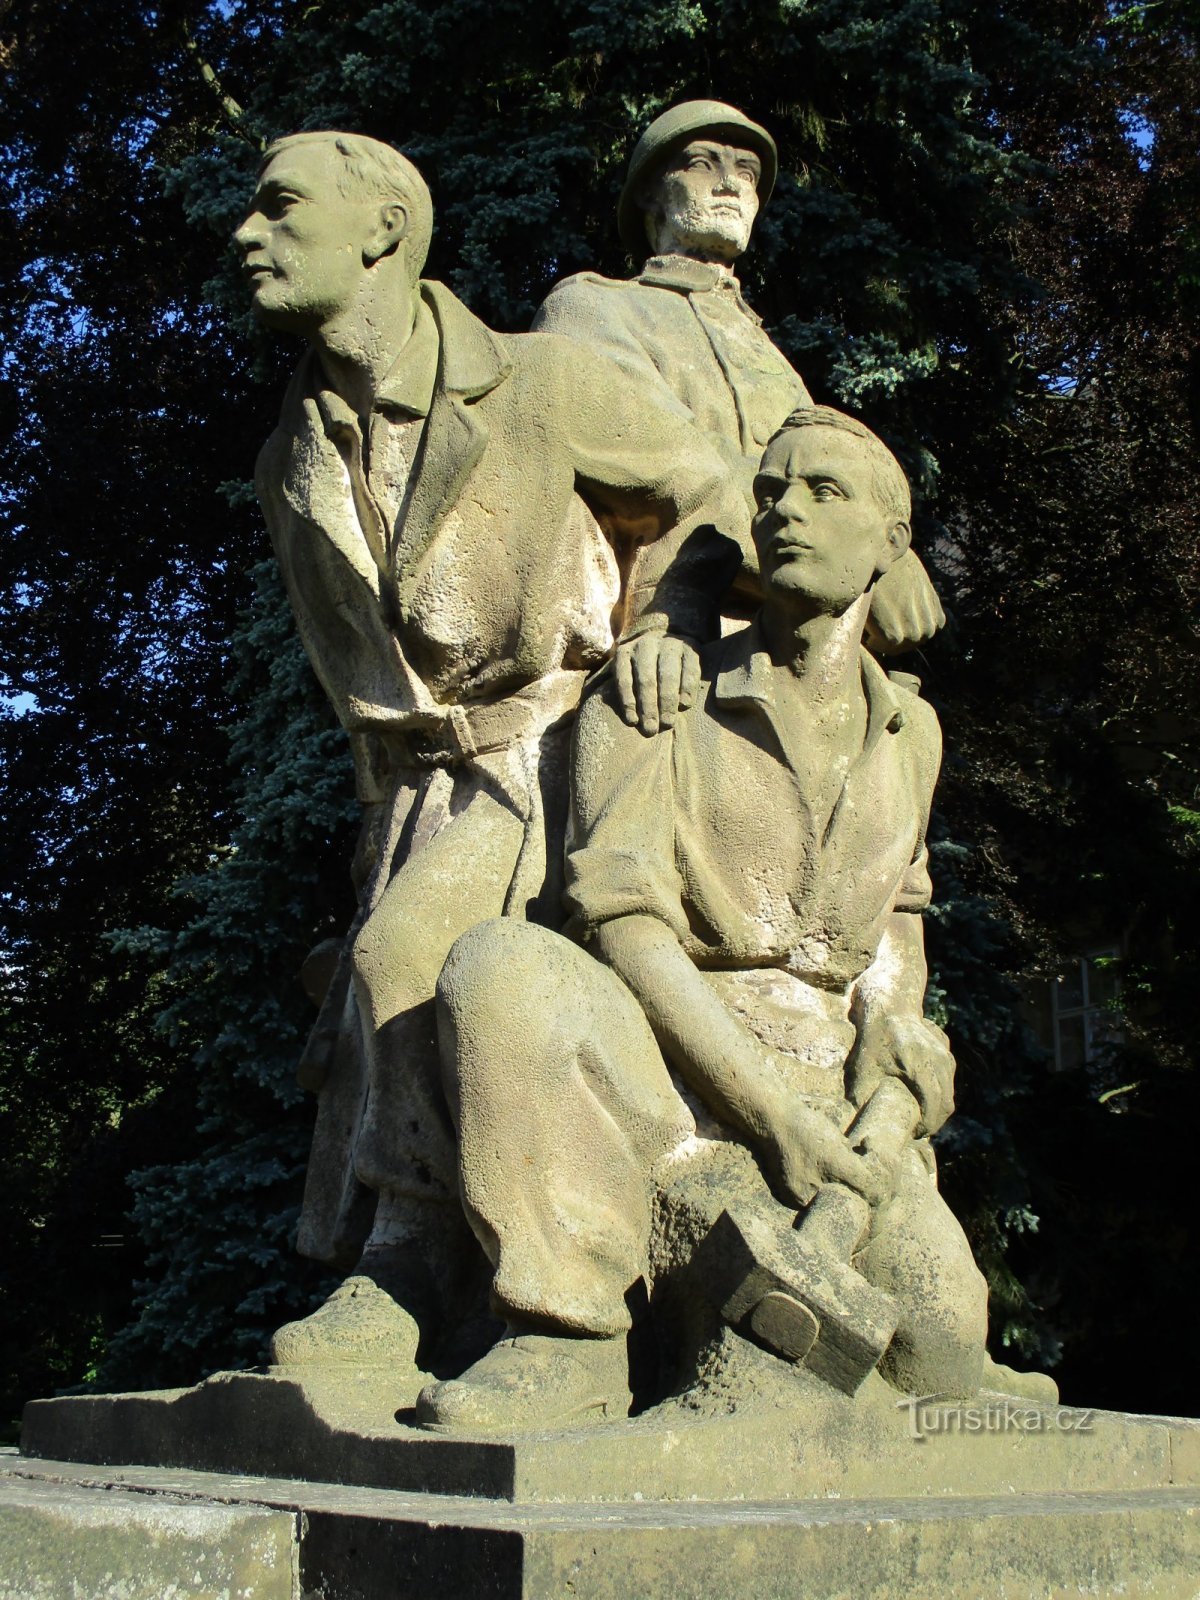 Пам'ятник опору та жертвам Другої світової війни (Сміржіце, 2 червня 2.6.2019 р.)